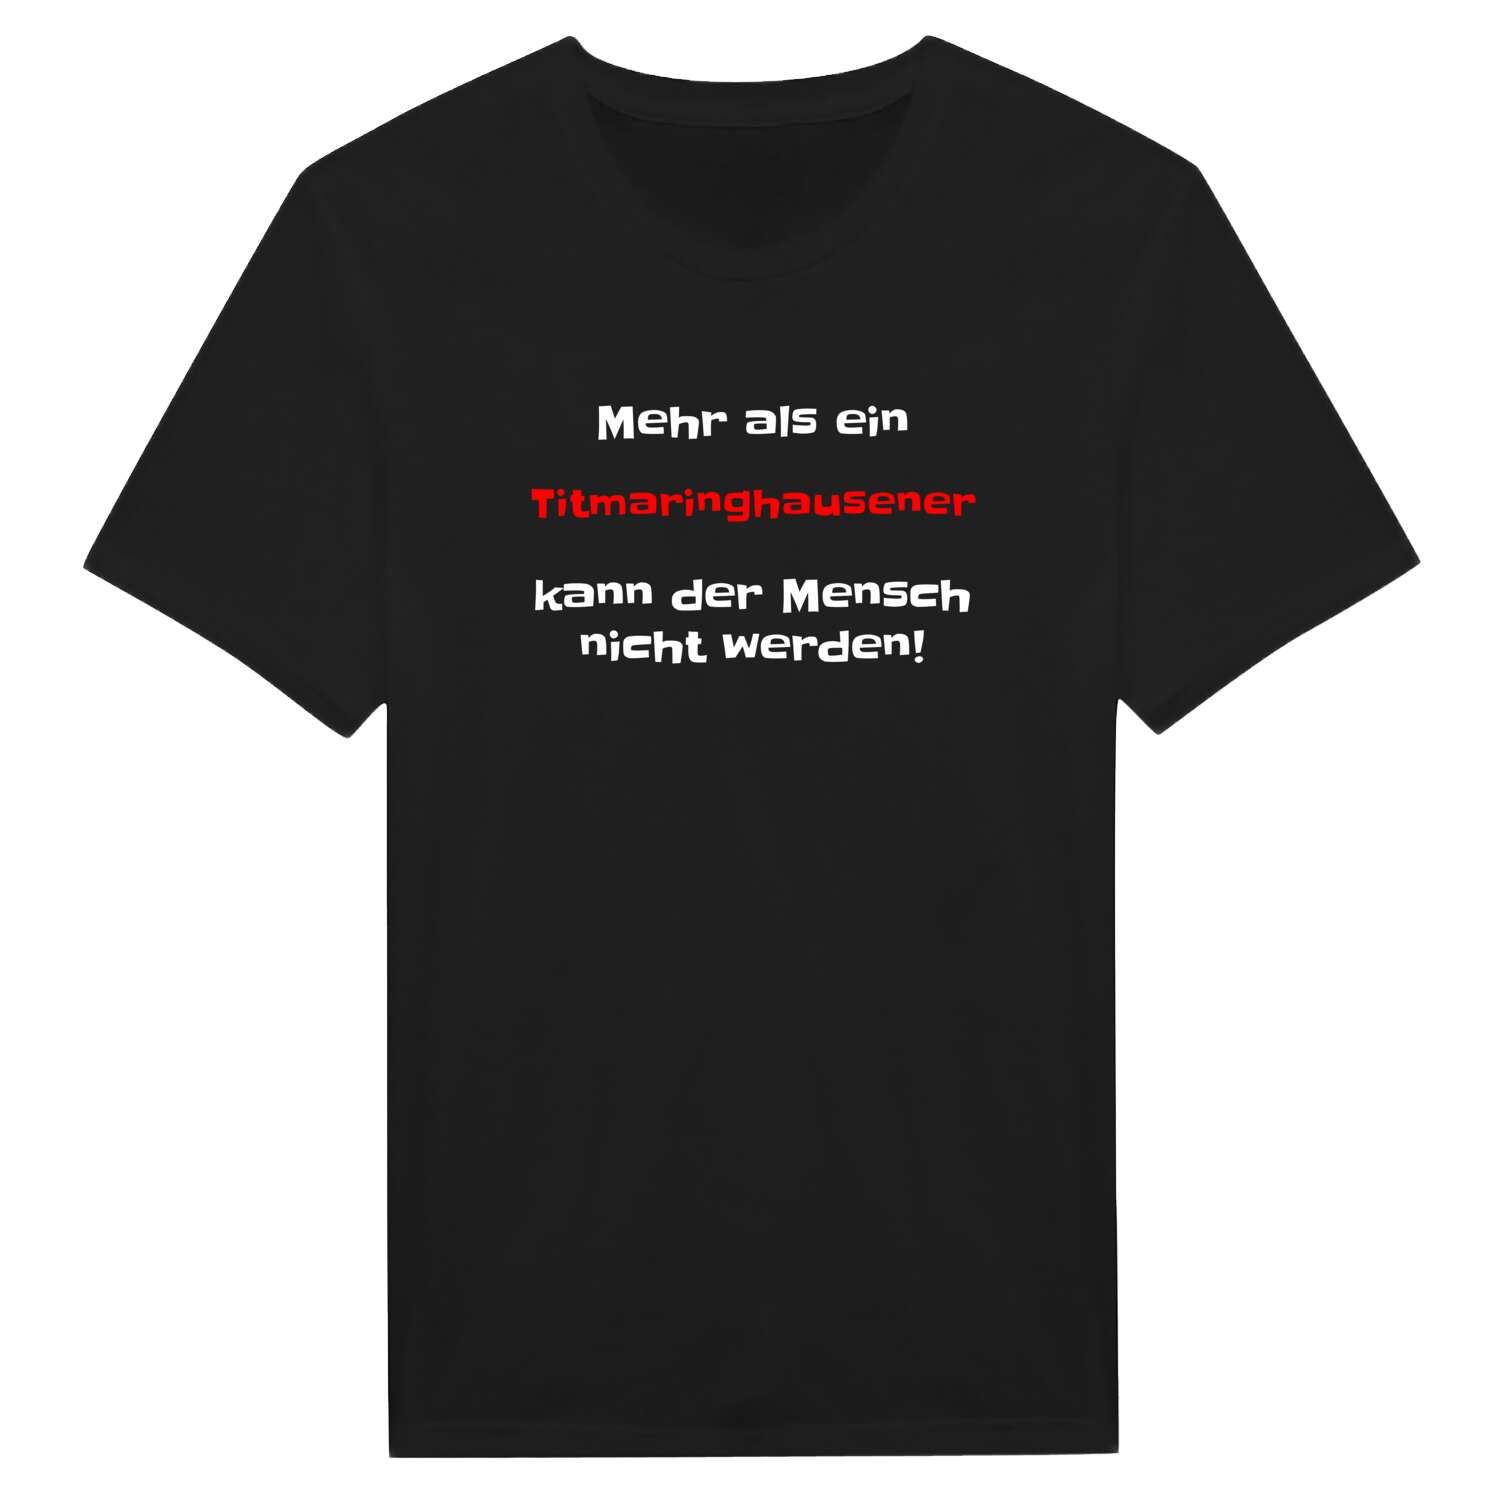 Titmaringhausen T-Shirt »Mehr als ein«